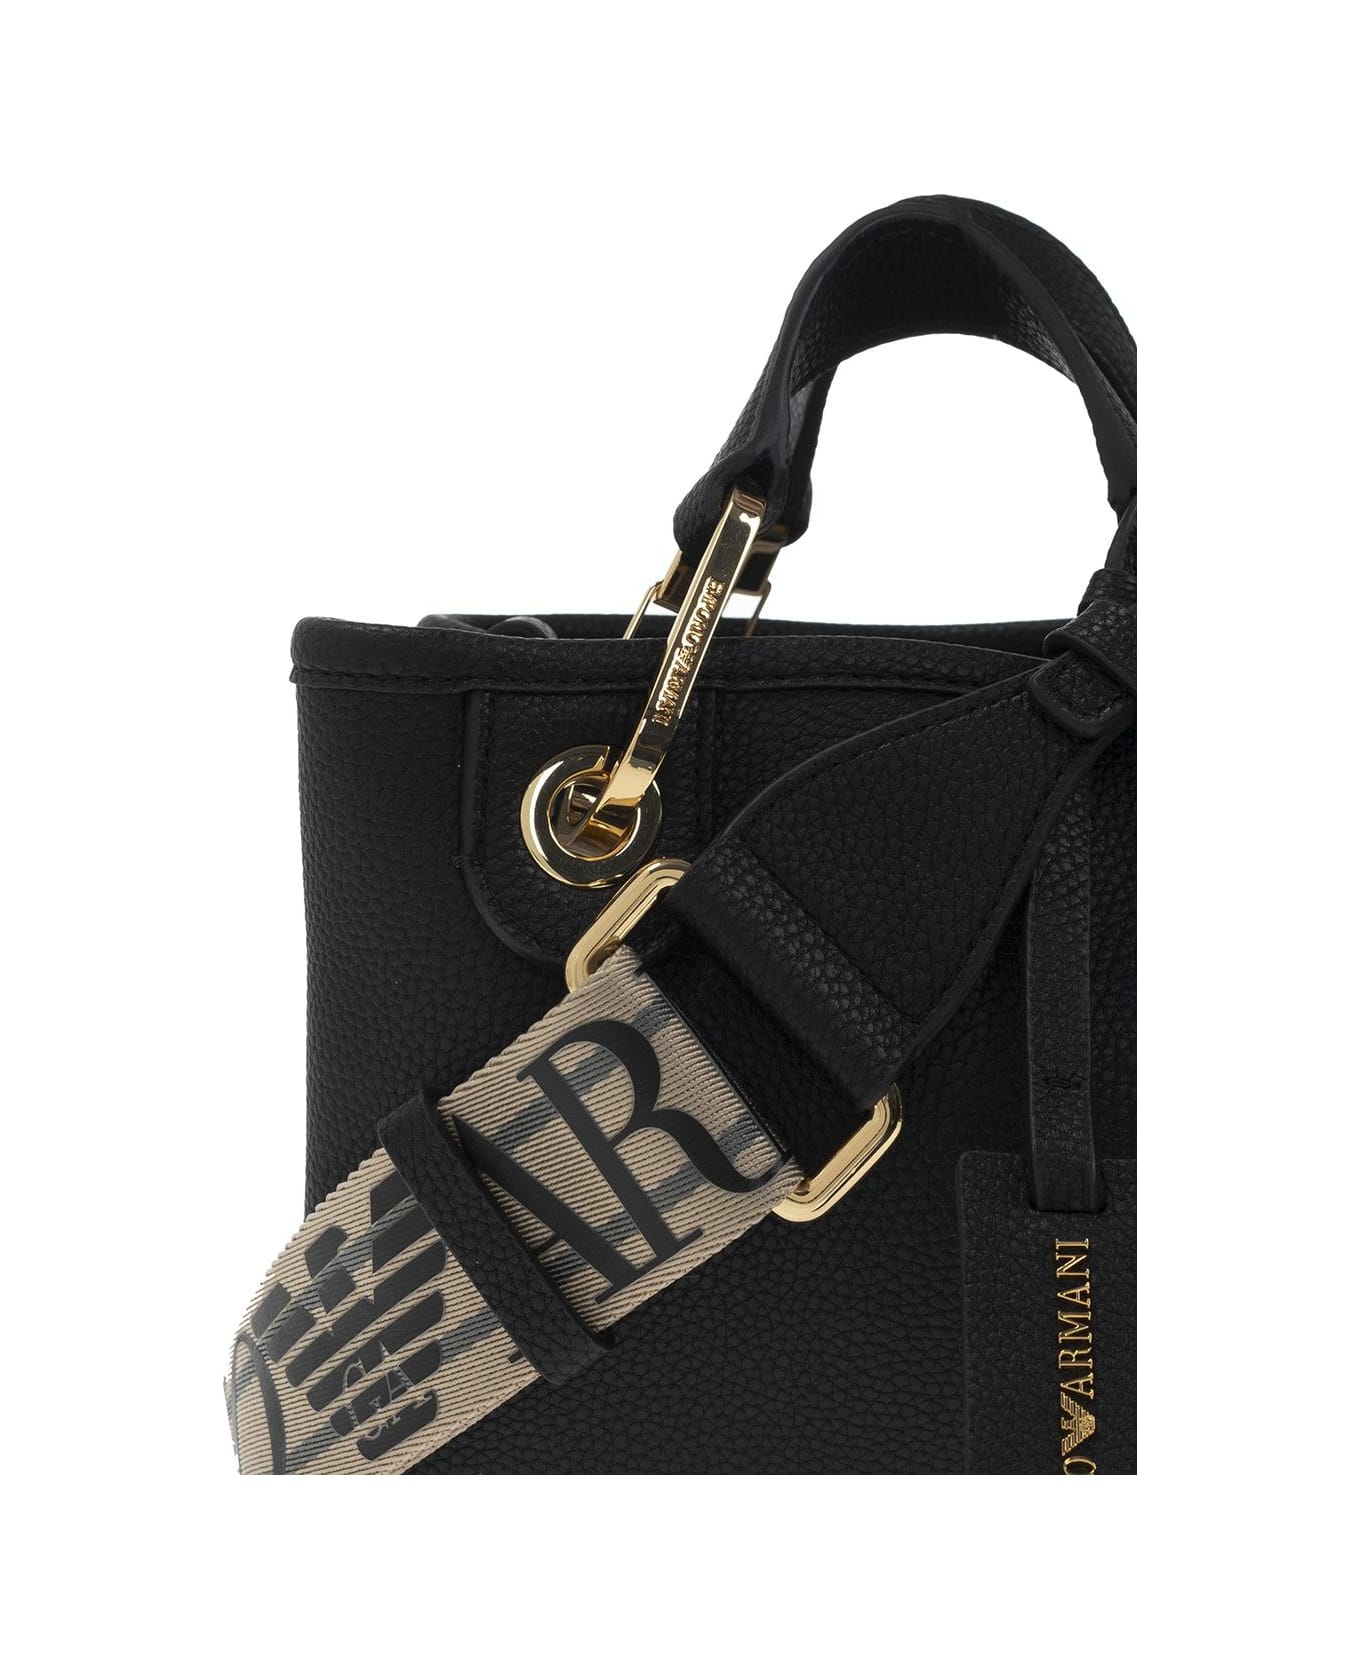 Emporio Armani 'myea Mini' Shoulder Bag - Nero/silver